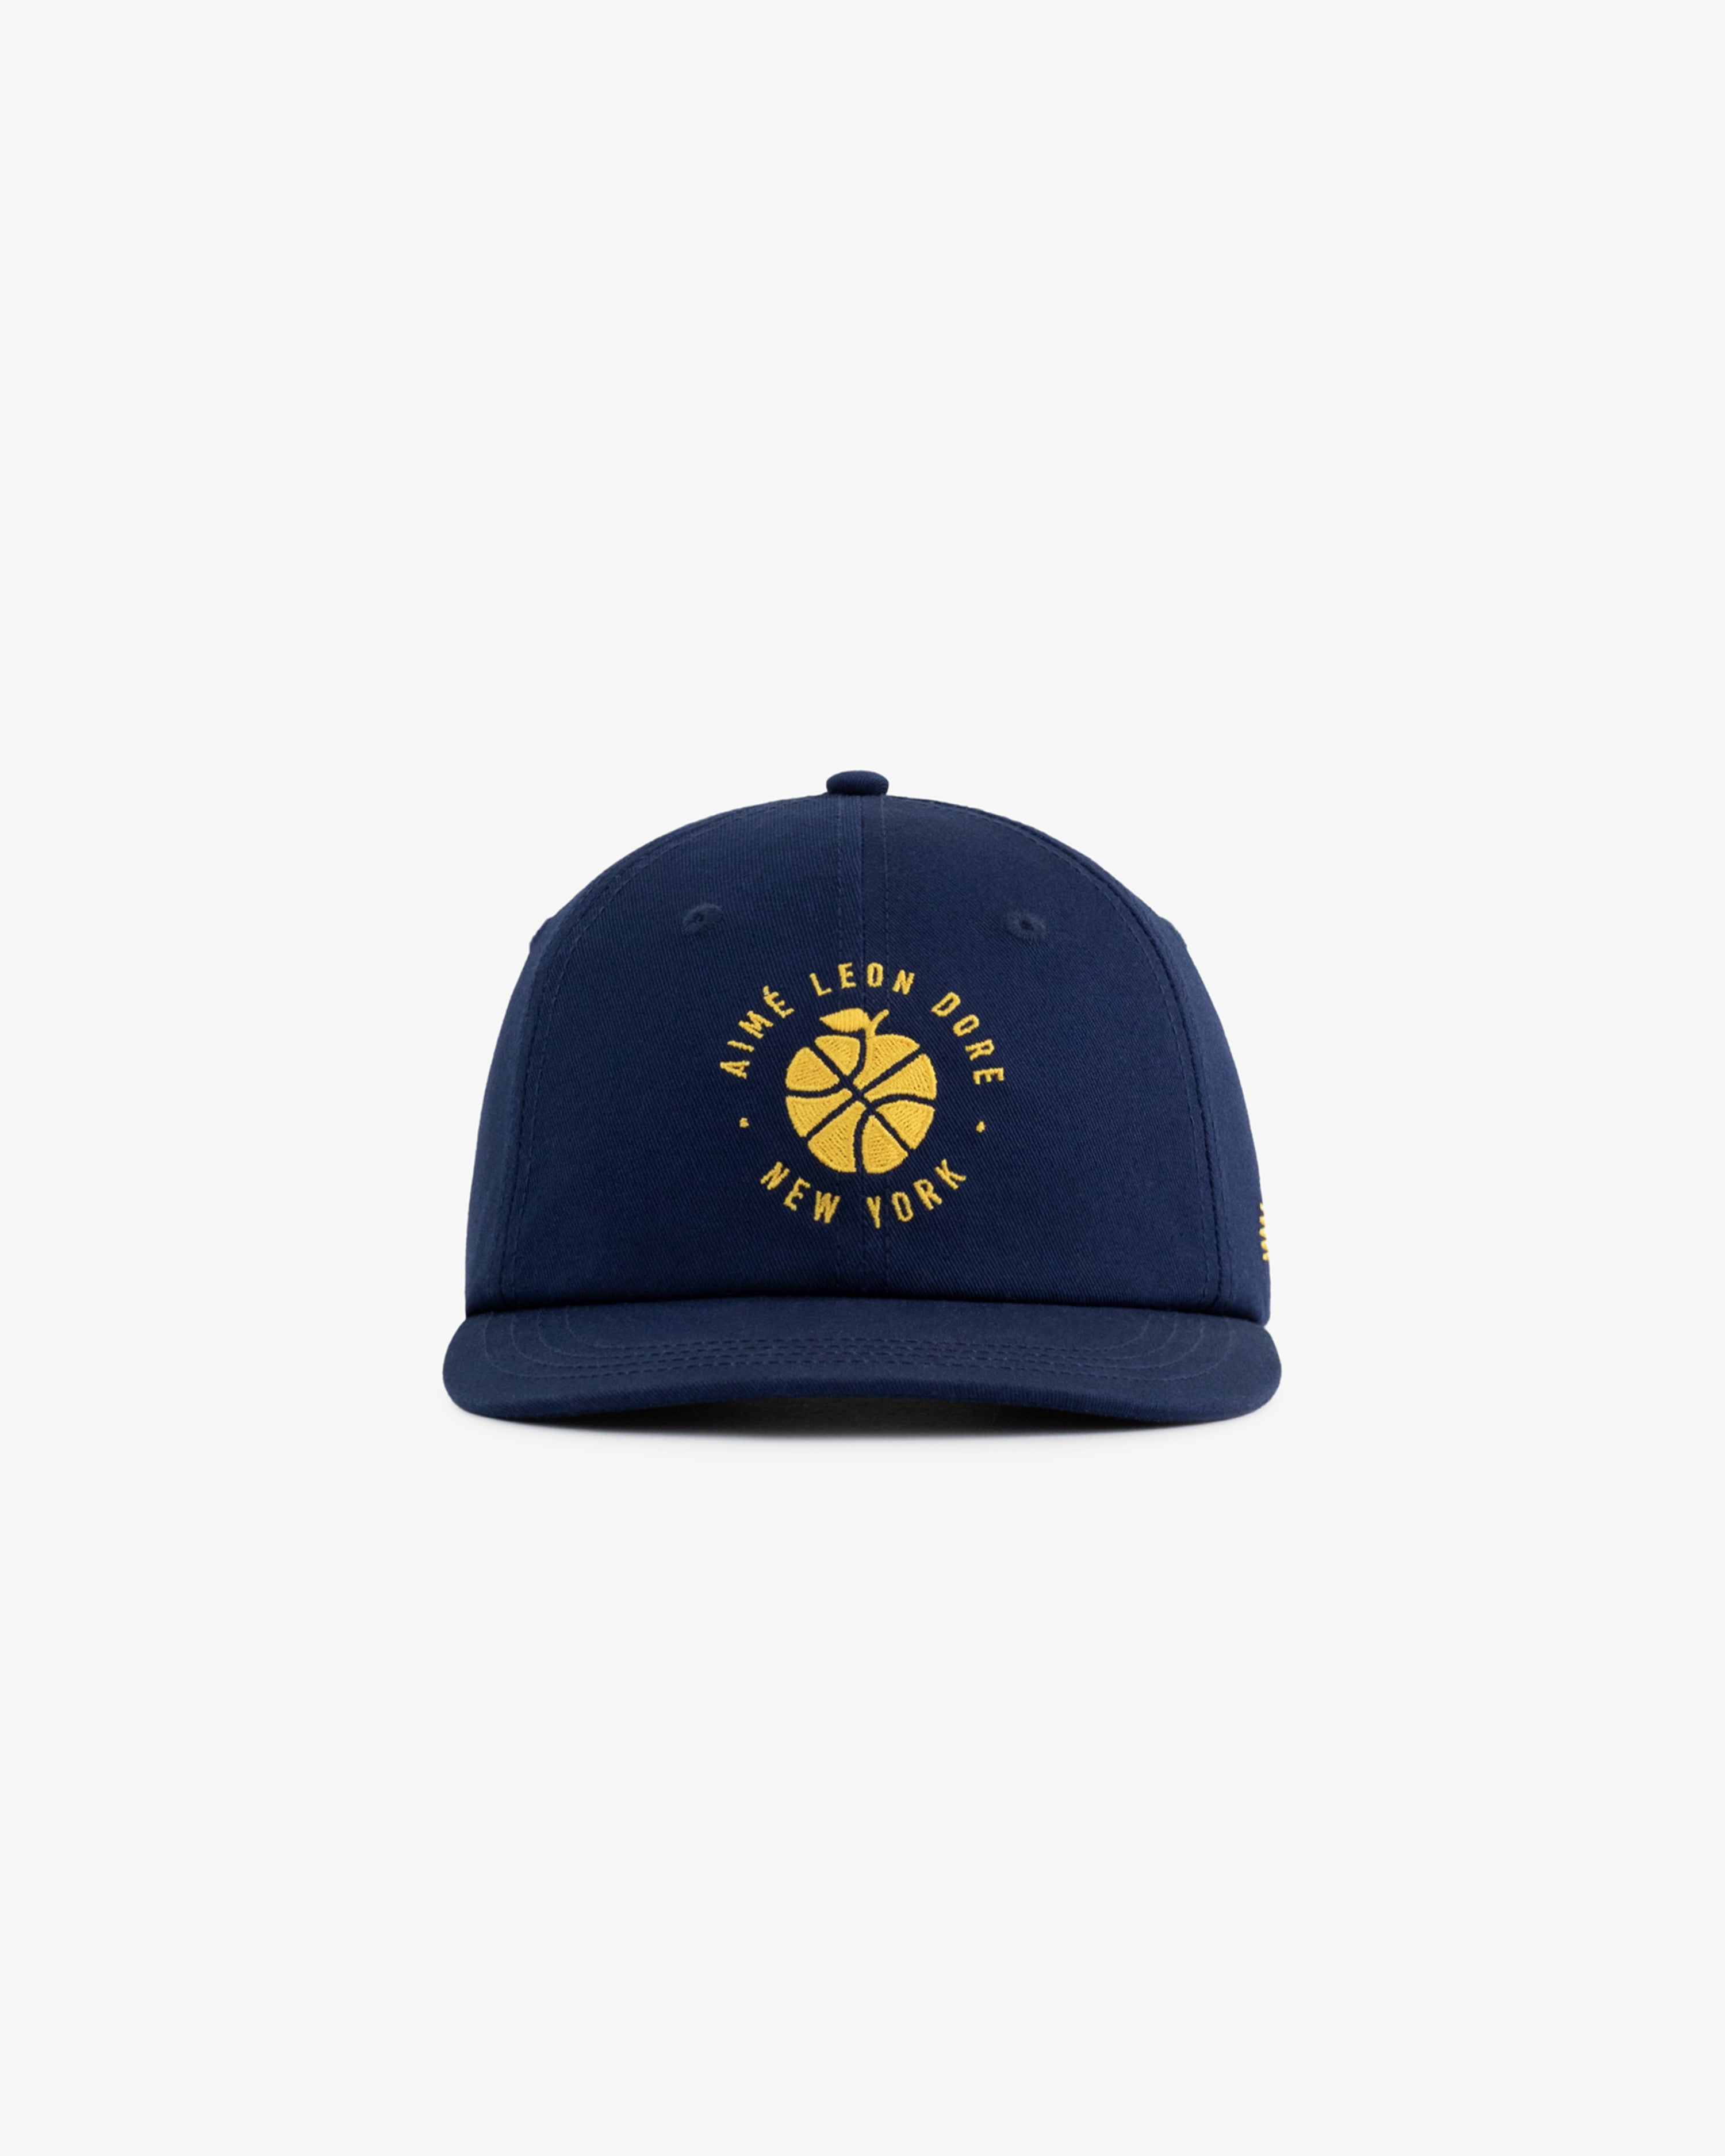 ALD / New Balance  SONNY NY  Hat